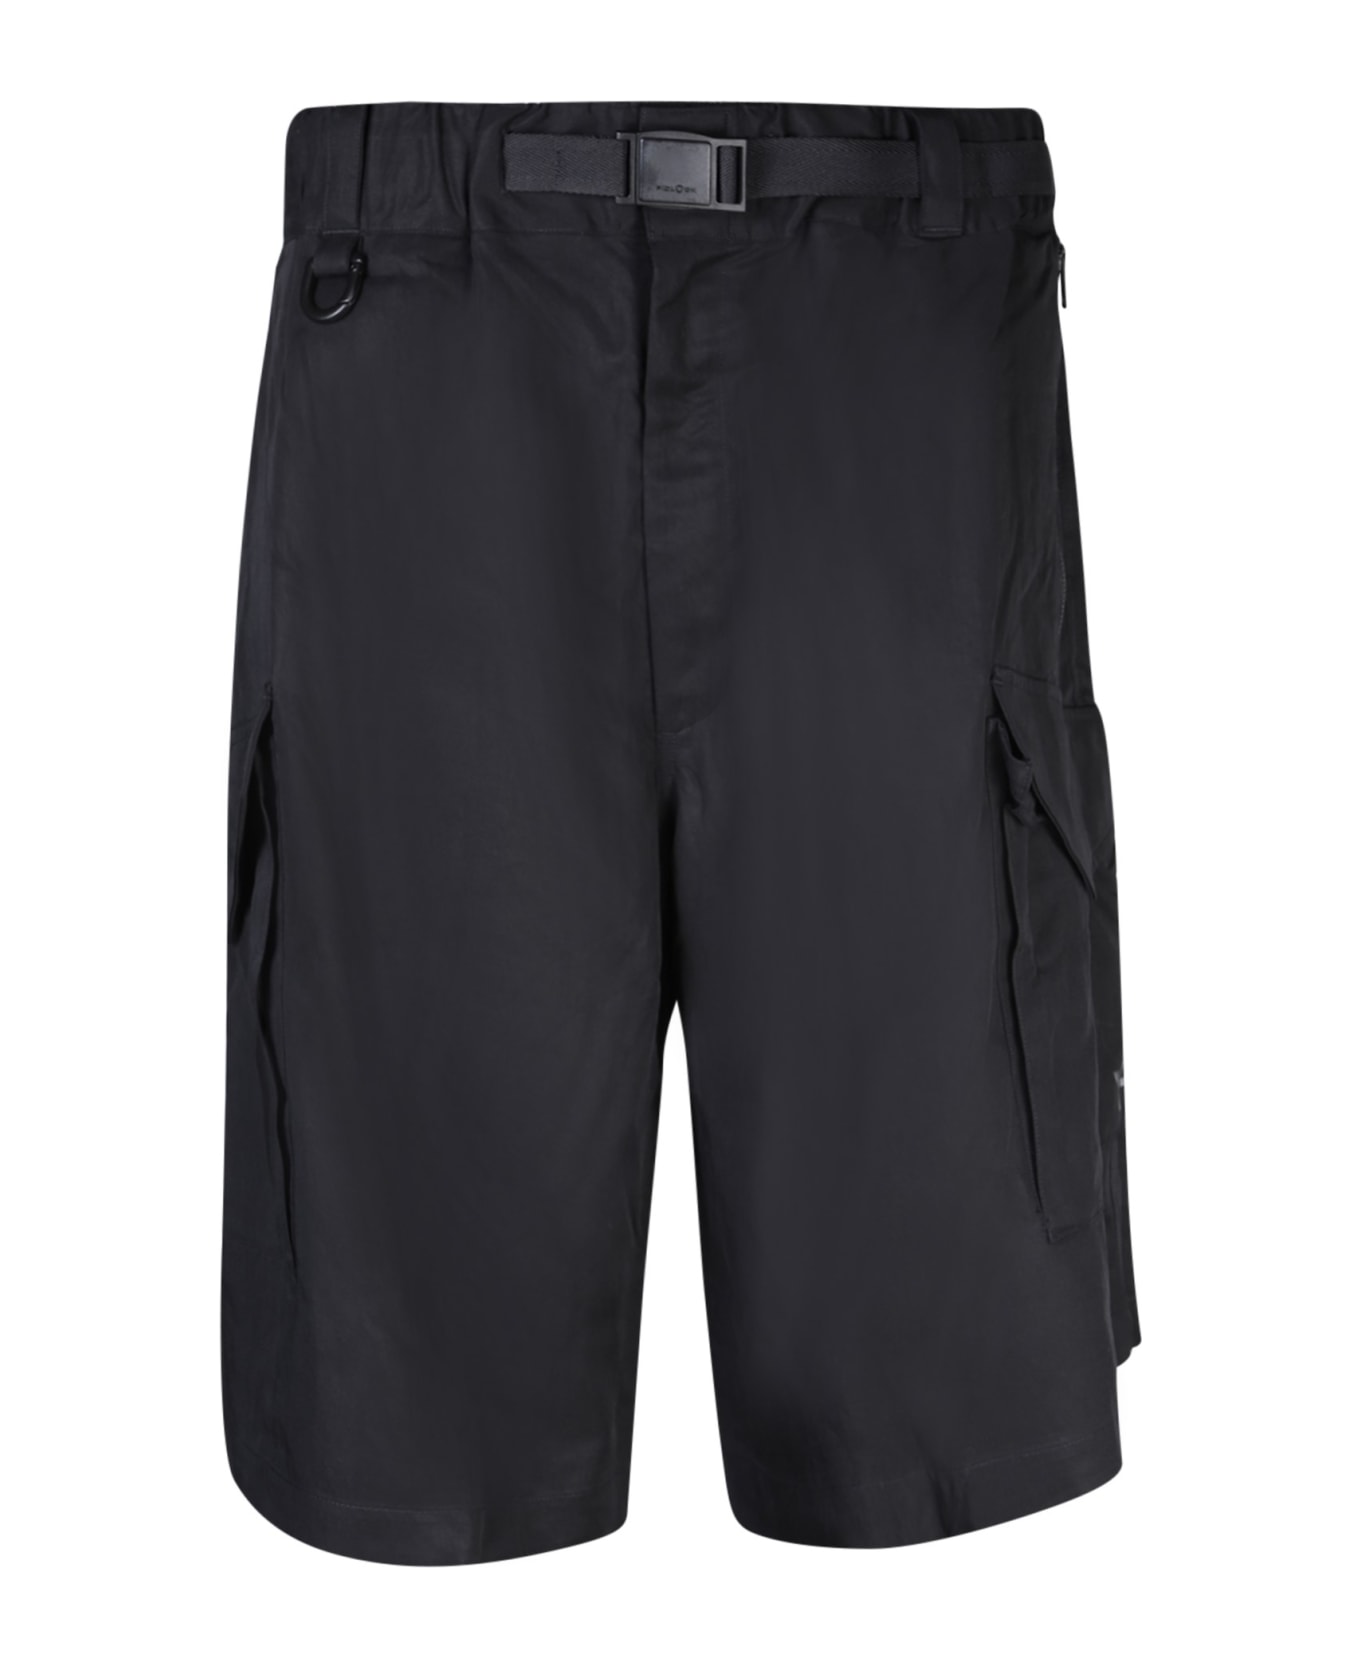 Y-3 Adidas Y-3 Washed Twill Black Bermuda Shorts - Black